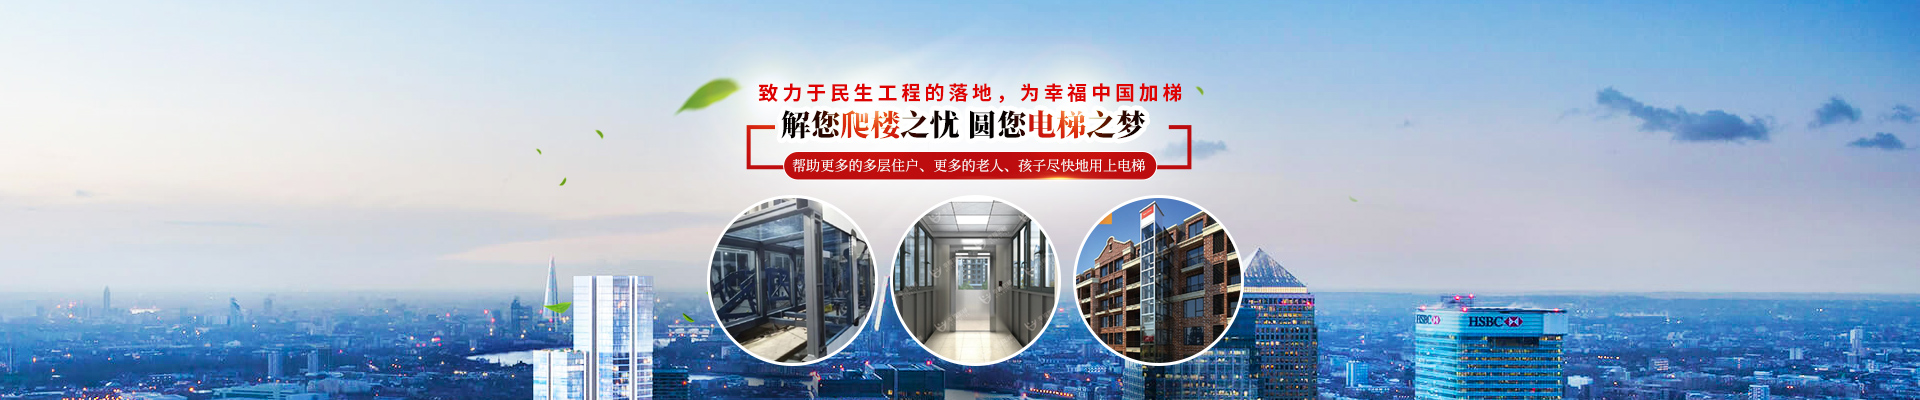 湖南幸福加装电梯工程有限公司_湖南电梯连廊样式|工厂全流程化作业生产电梯